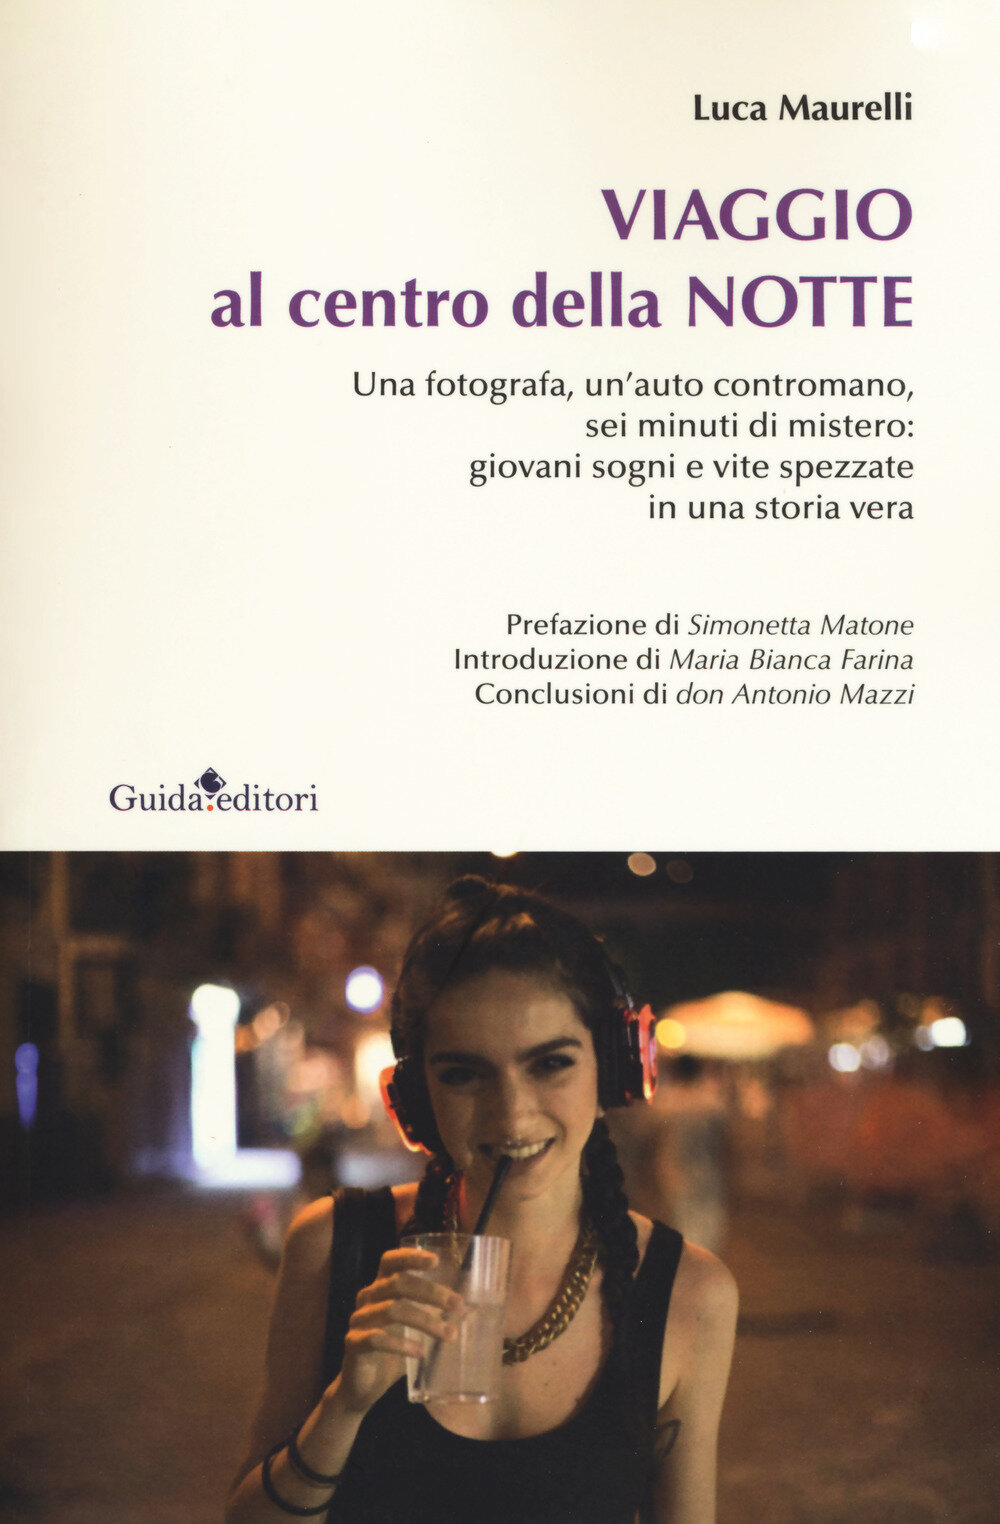 ‘Viaggio al centro della notte’, venerdì 12 al Mondadori Books di piazzale Tecchio a Napoli